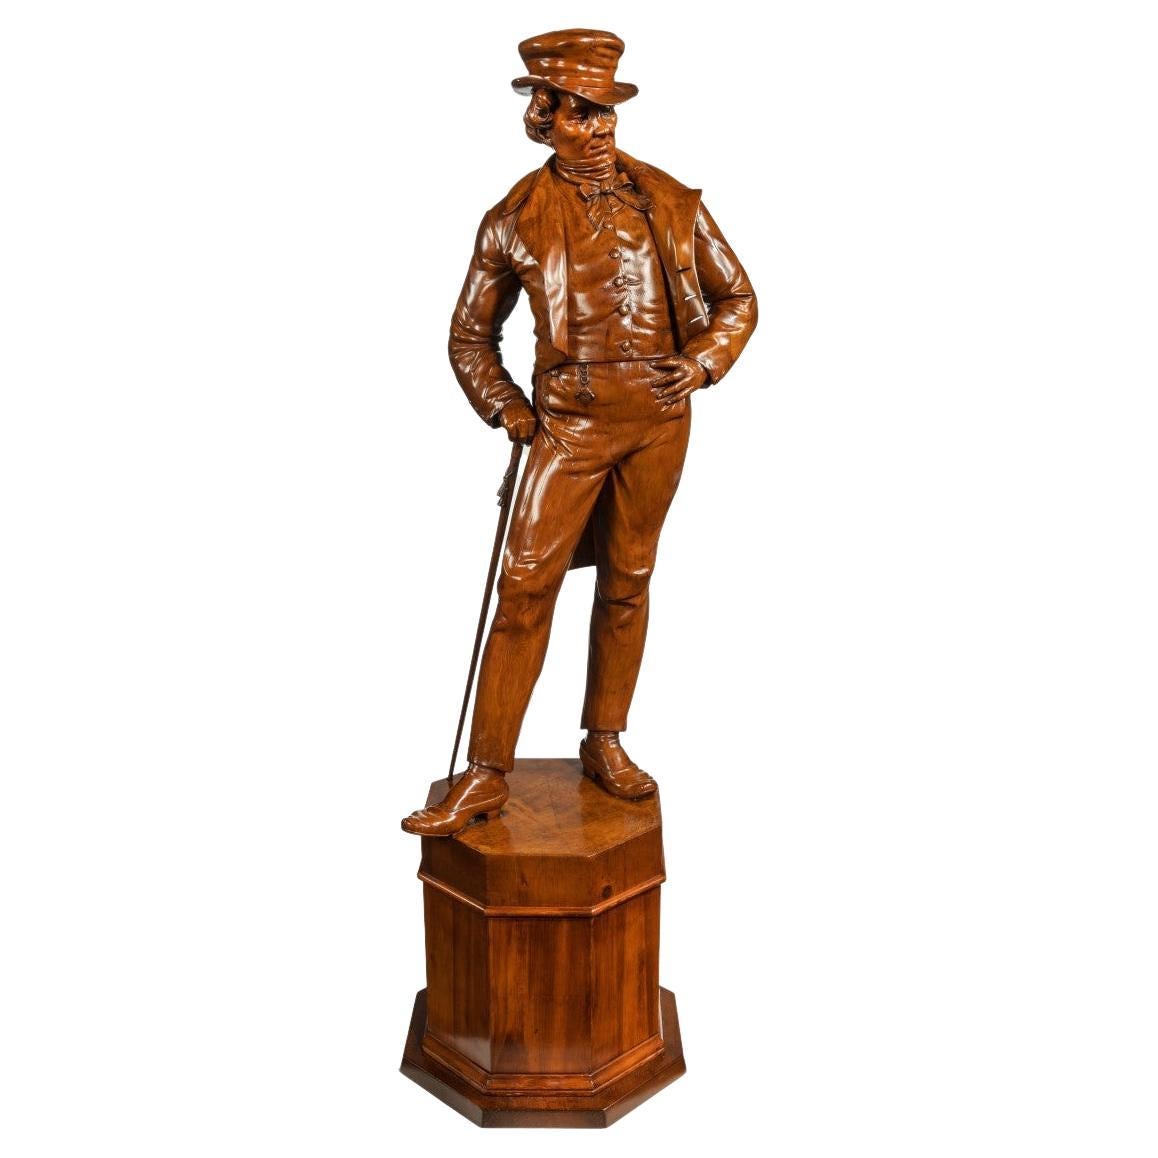 Viktorianische geschnitzte Walnussholzfigur eines modischen Herren, der ein weiches Oberteil trägt